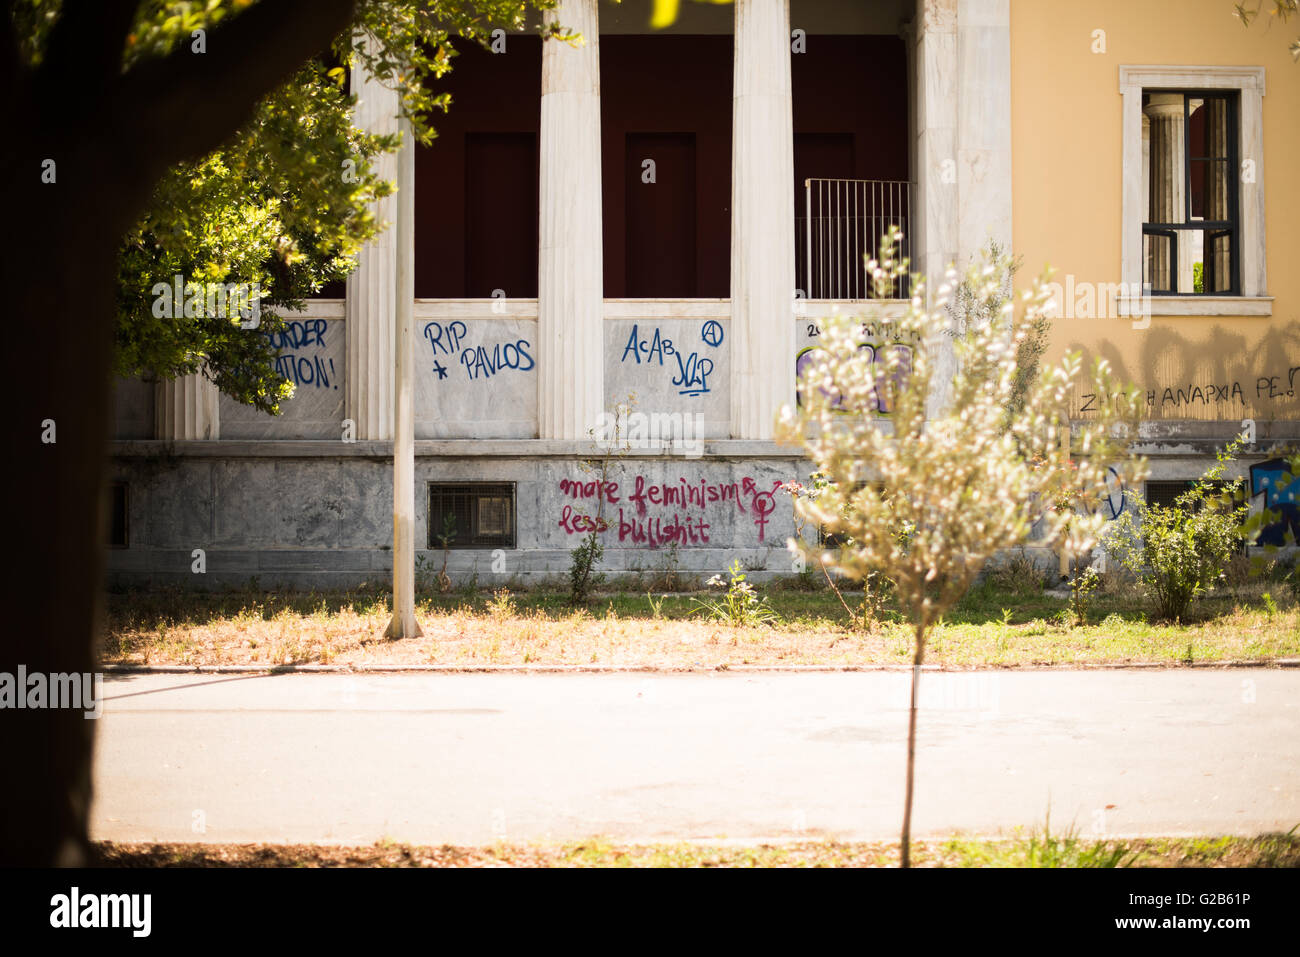 Dal momento che la crisi finanziaria ha colpito la Grecia vi è stata una esplosione di graffiti per le strade di Atene, la capitale della nazione. Questo è un esempio di alcuni dei colorati e spesso molto creative arte di strada. Foto Stock